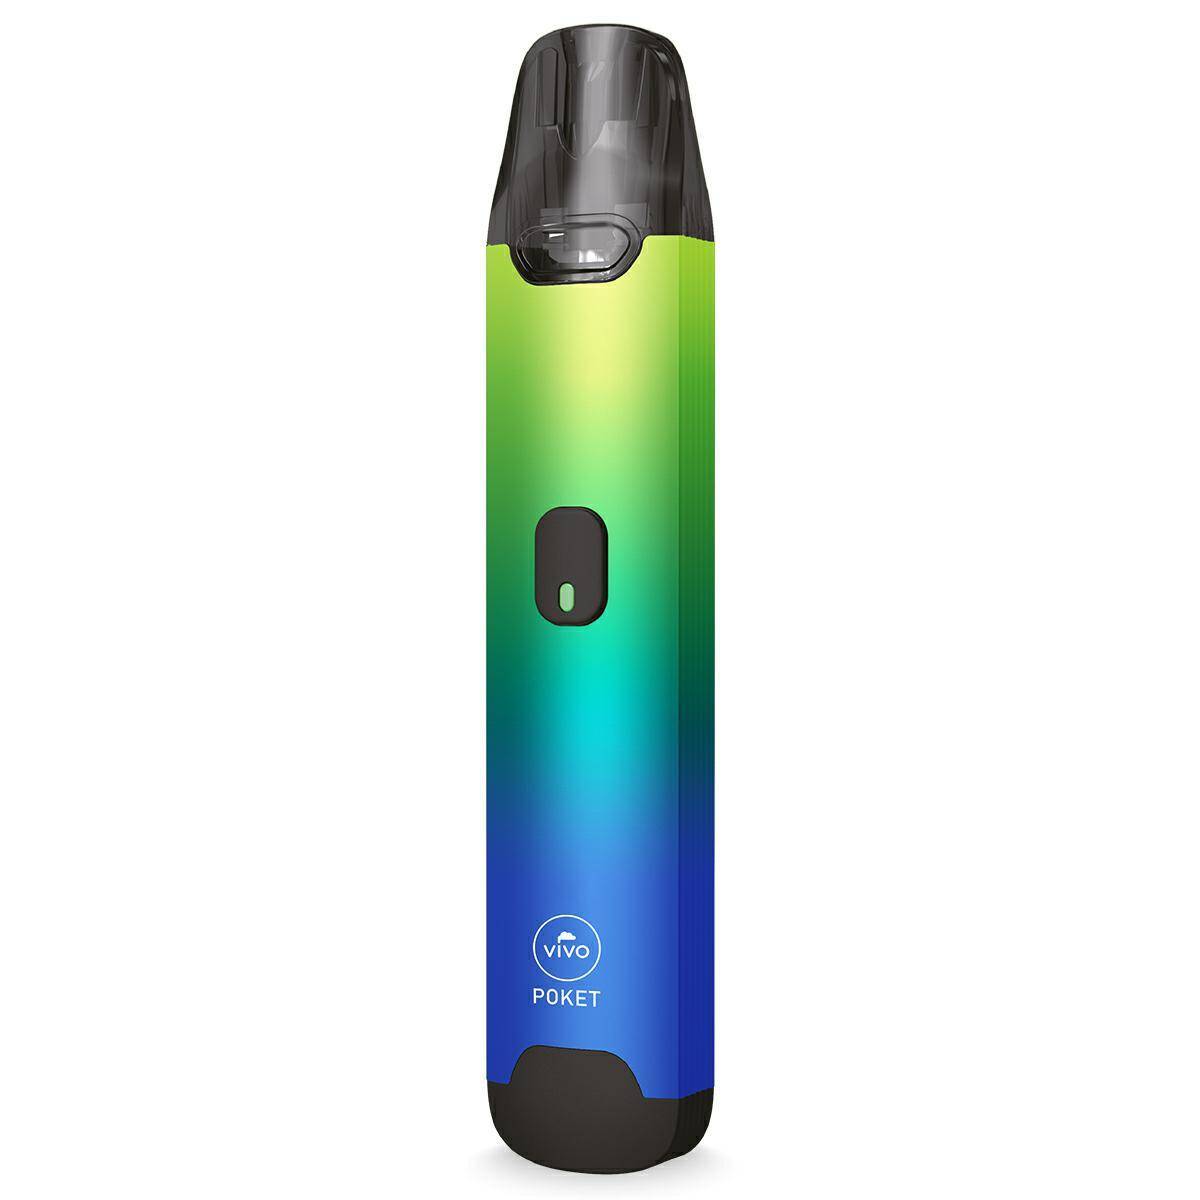 E-cigarette VIVO POKET - OPEN POD (Space Blue)